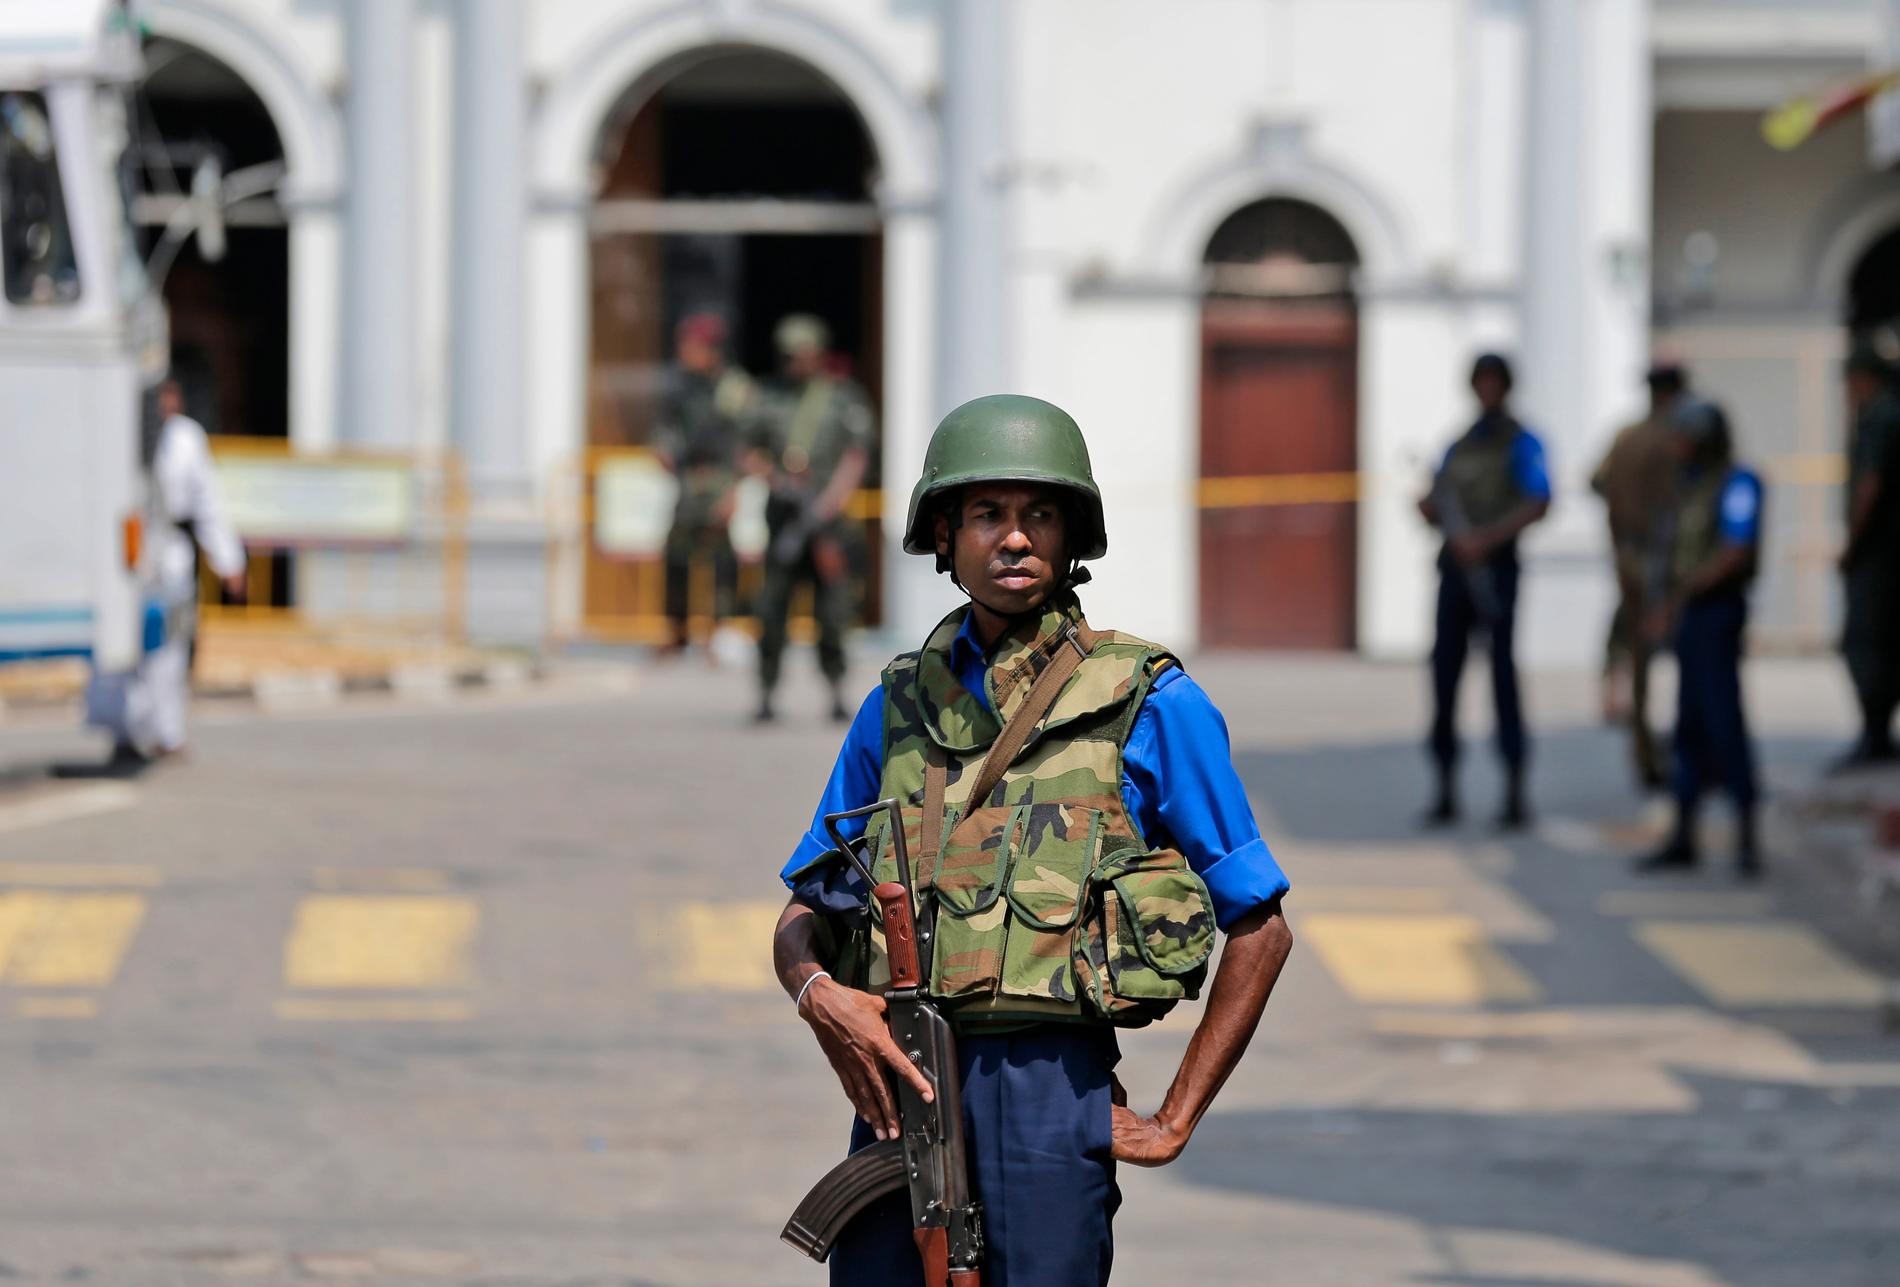 En lankesisk soldat på vakt utanför en kyrka i huvudstaden Colombo efter attackerna. Arkivbild.